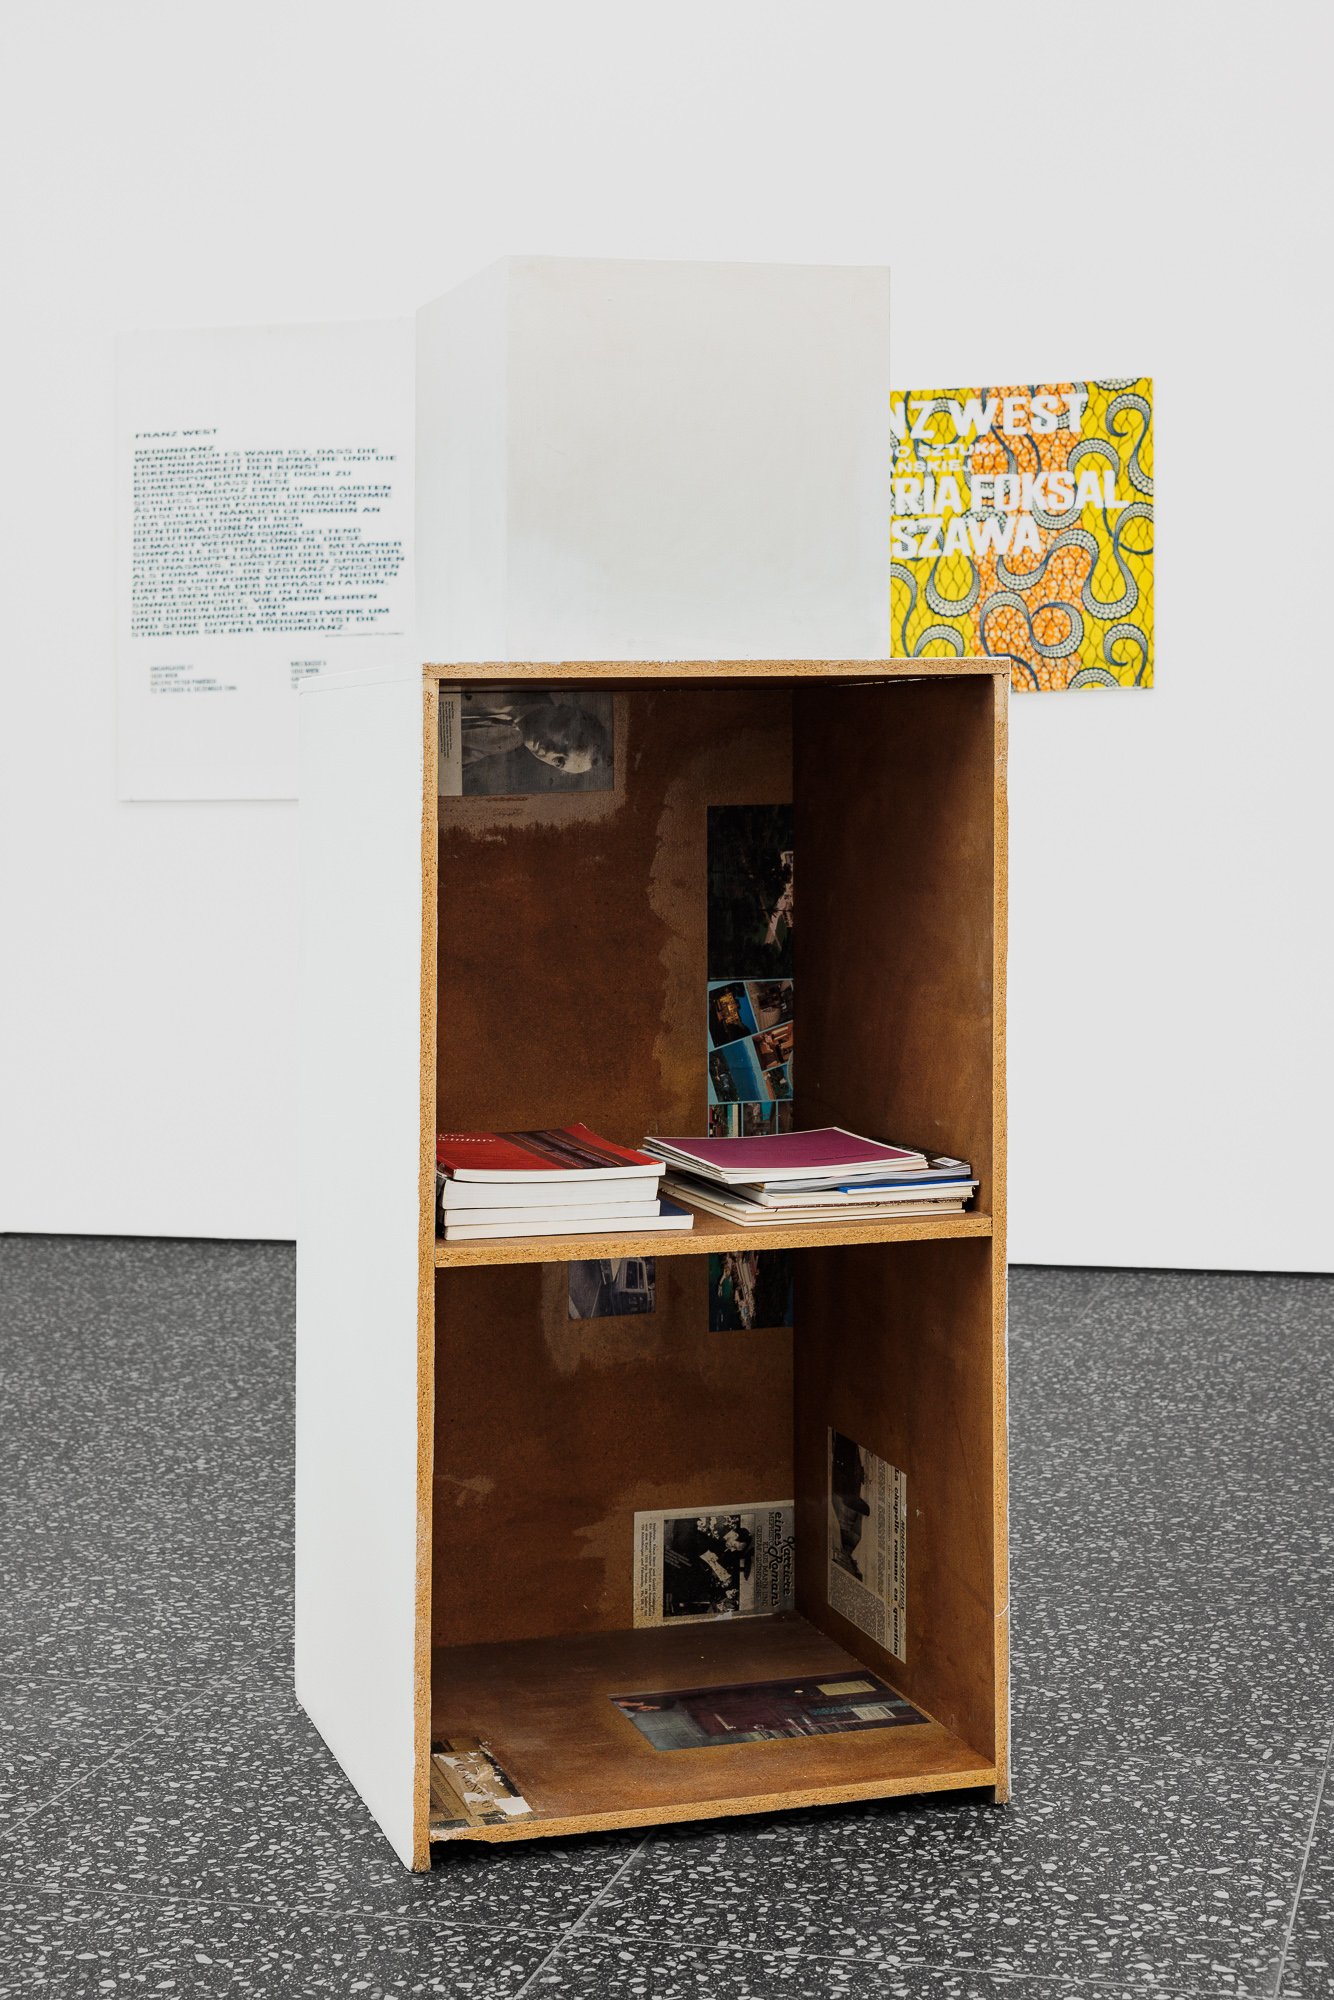 Franz WestPièce pour 6 étudiants, 1995Wood, papiermaché, various objectsVarious dimensions